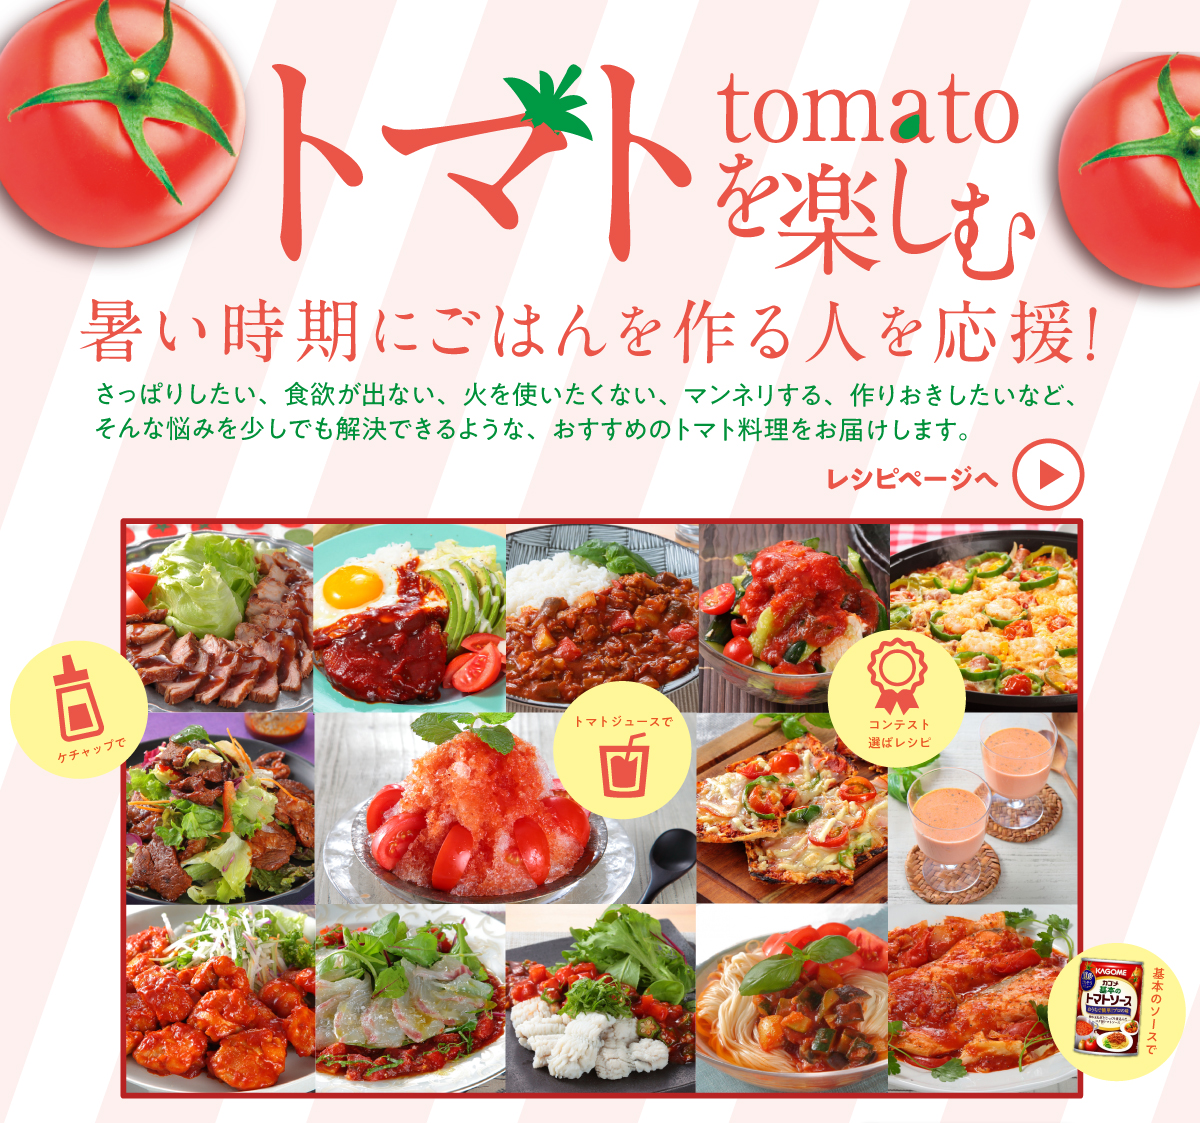 トマトレシピ”></a></p>
  <p style=